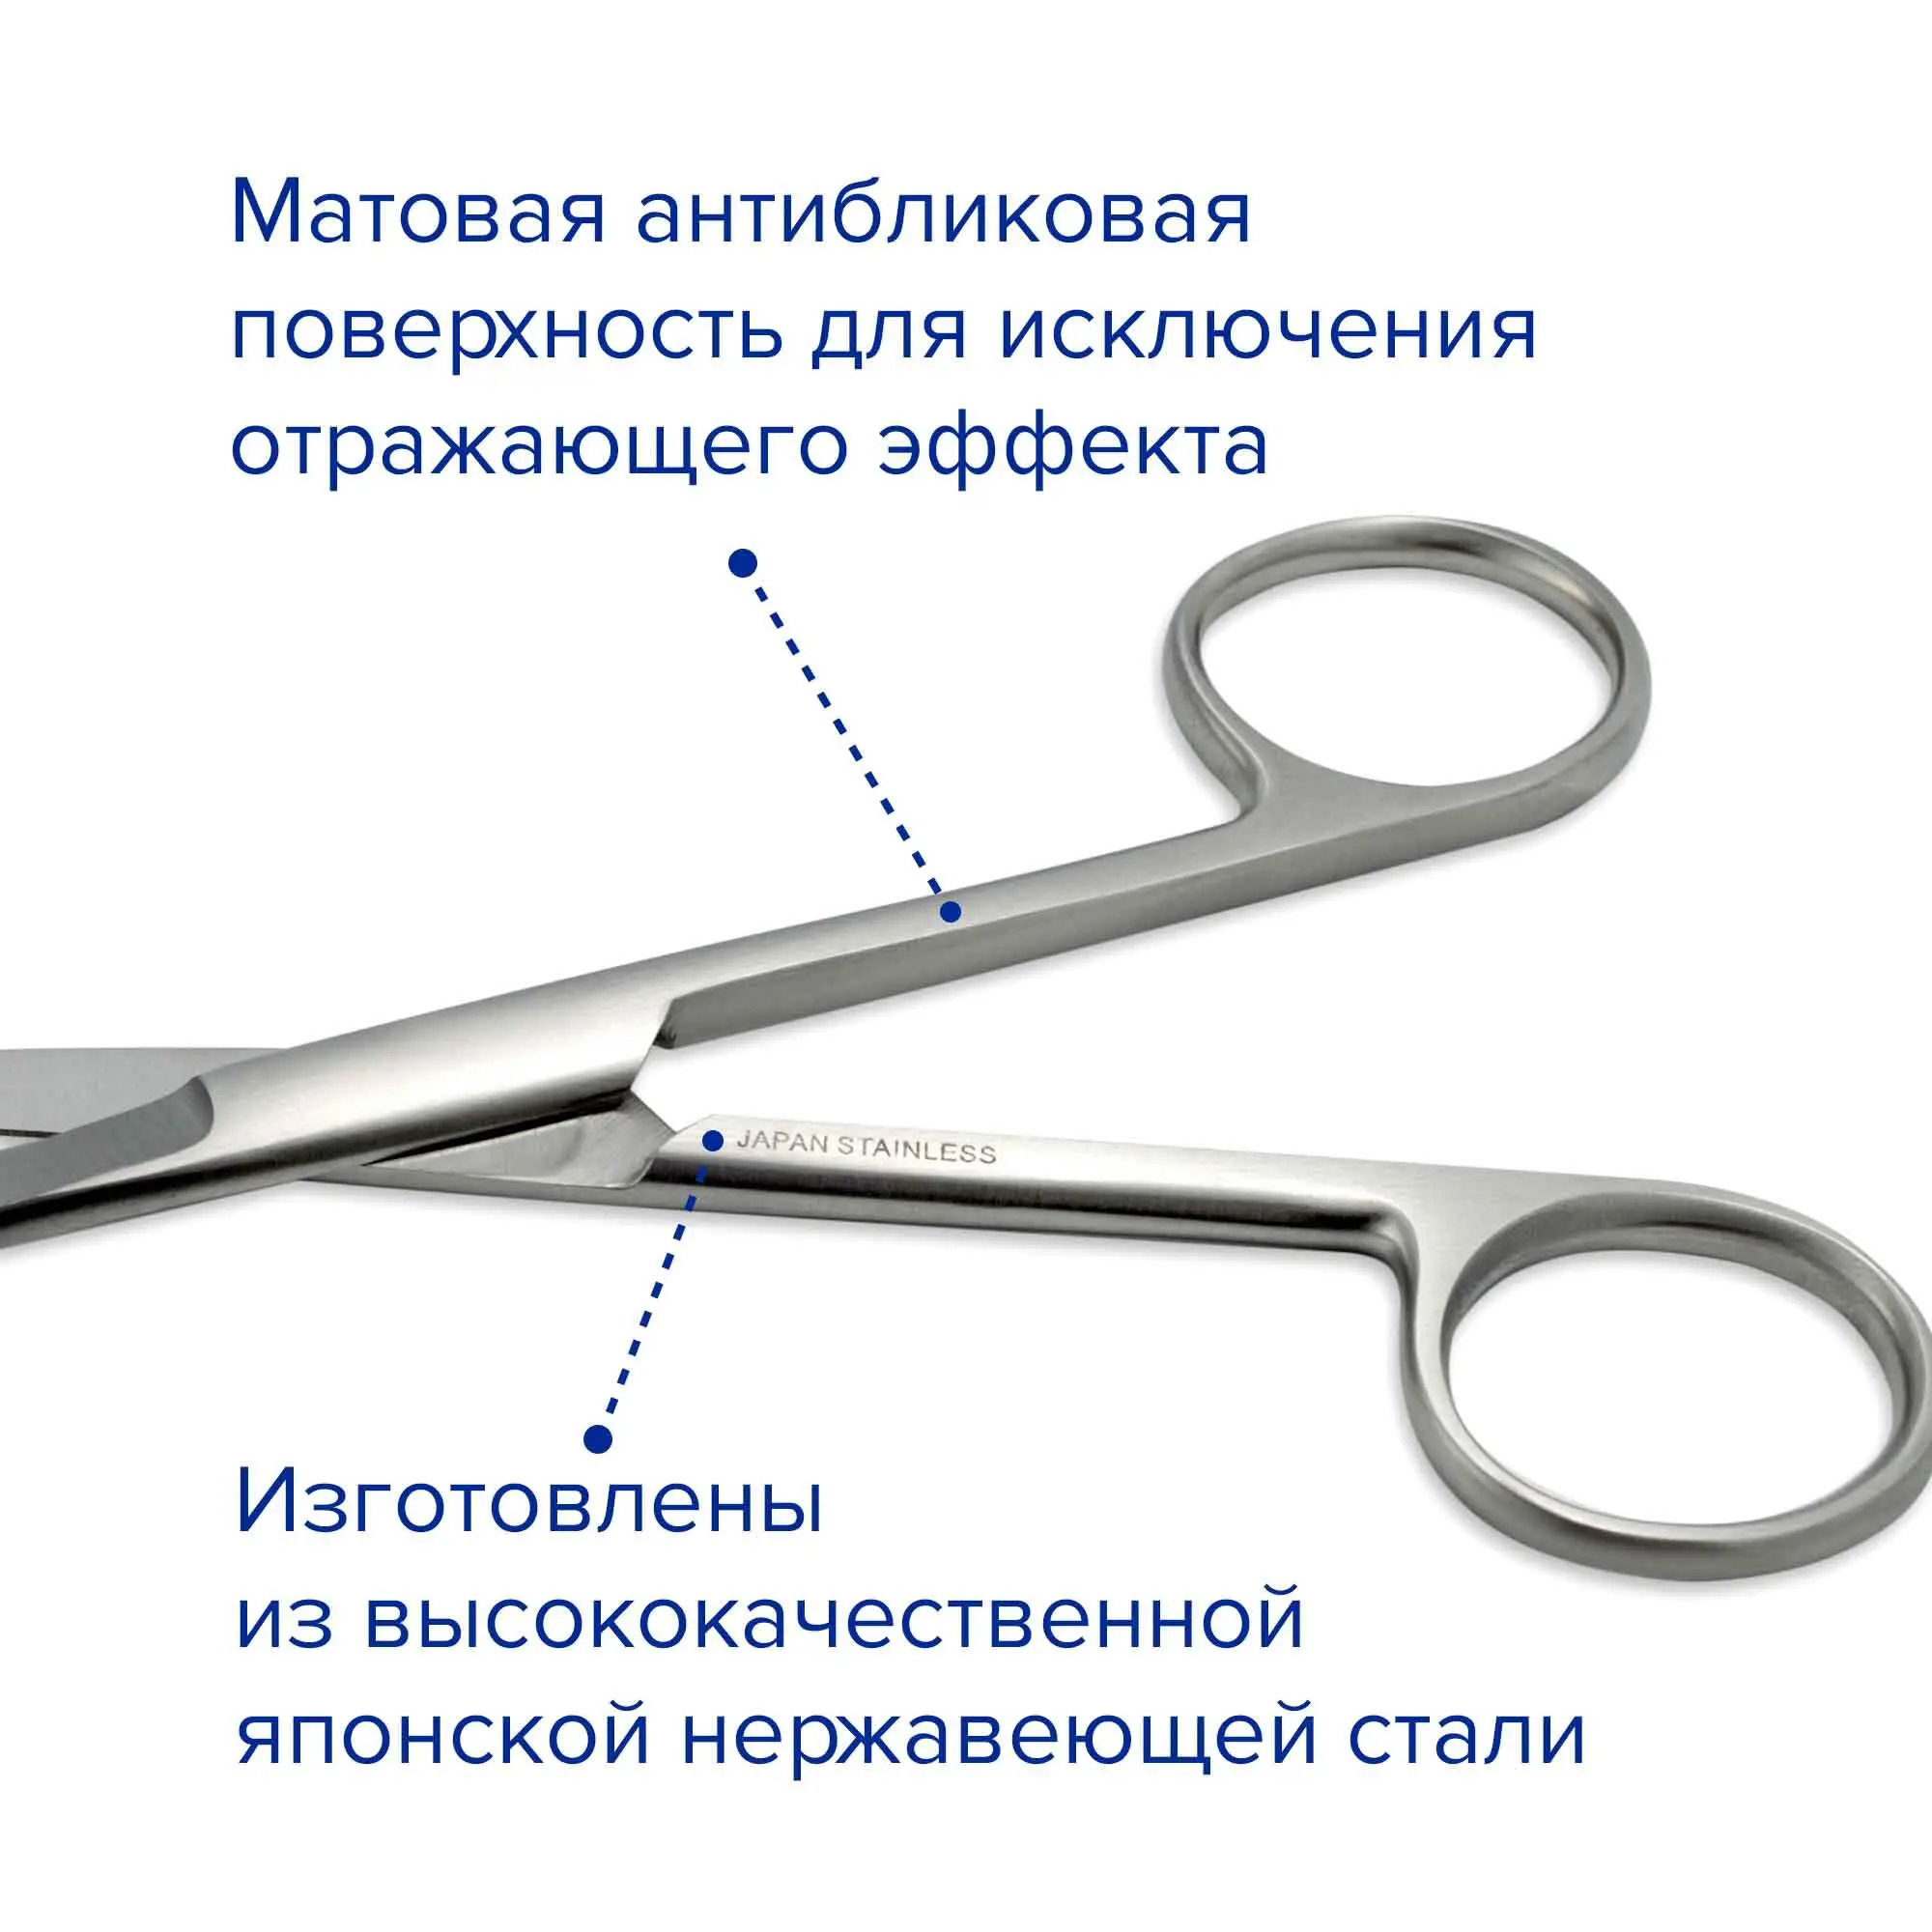 Ножницы хирургические остроконечные Standard, вертикально изогнутые, 120 мм, Apexmed